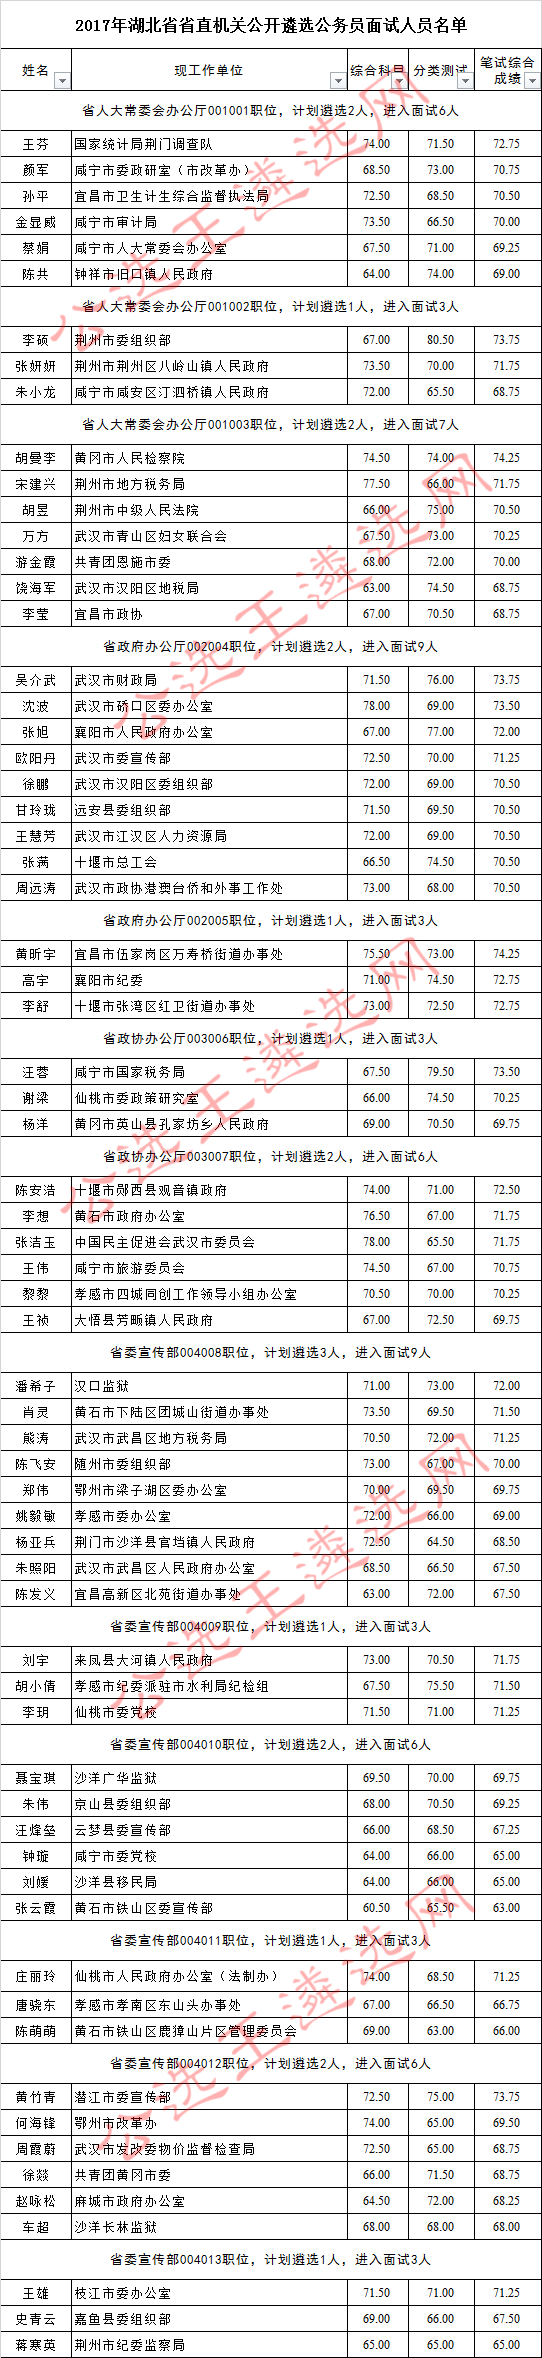 2017年湖北省省直机关公开遴选公务员面试人员名单1_meitu_6.jpg